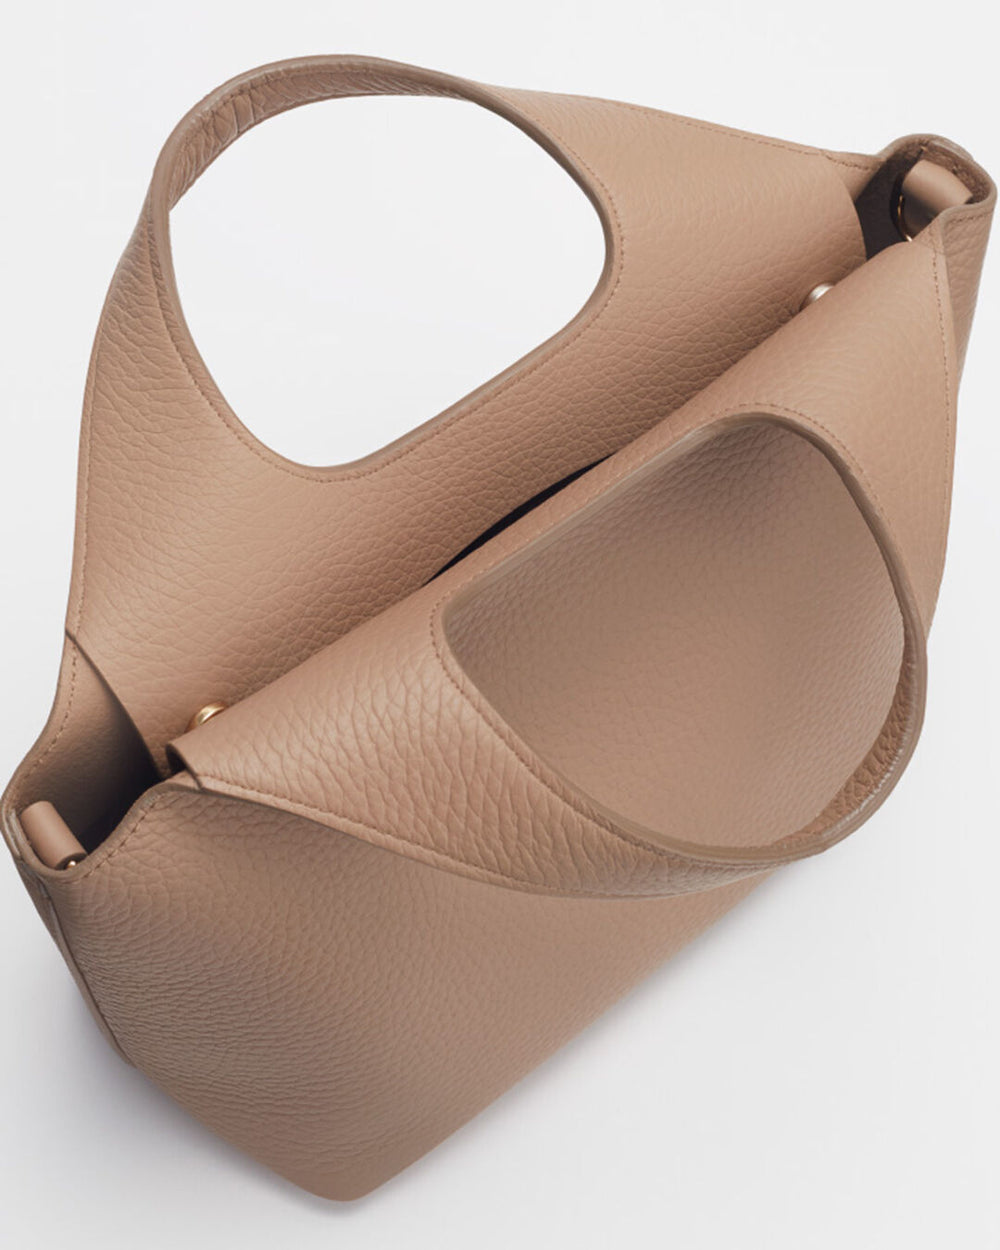 Handbag with a unique handle design